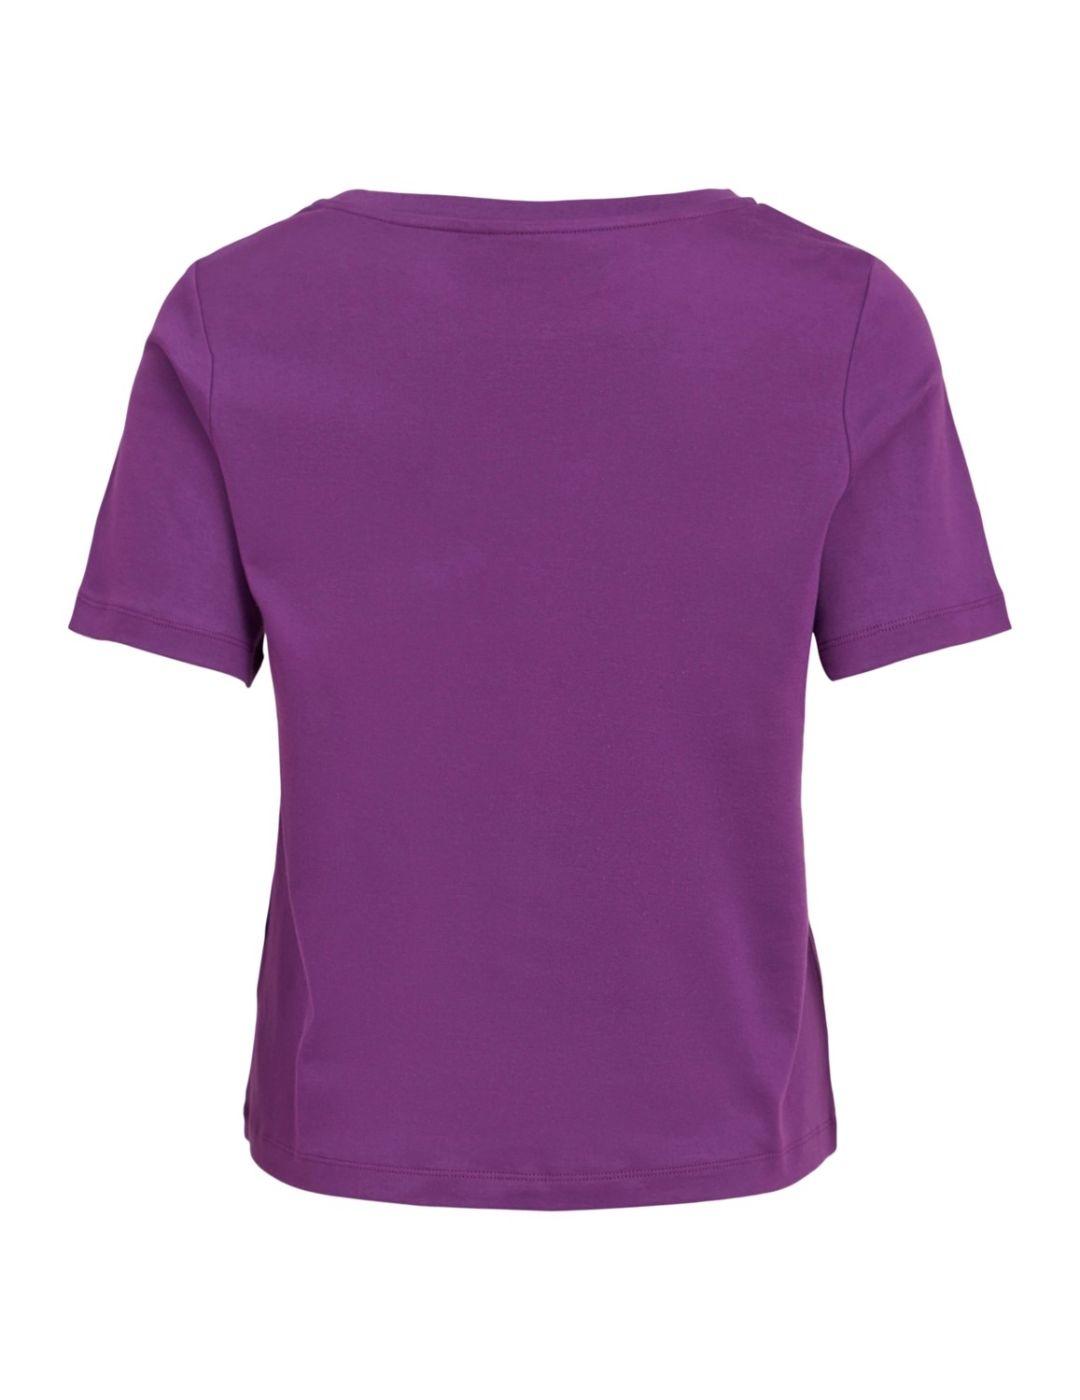 Camiseta Vila Rebel violeta para mujer-b